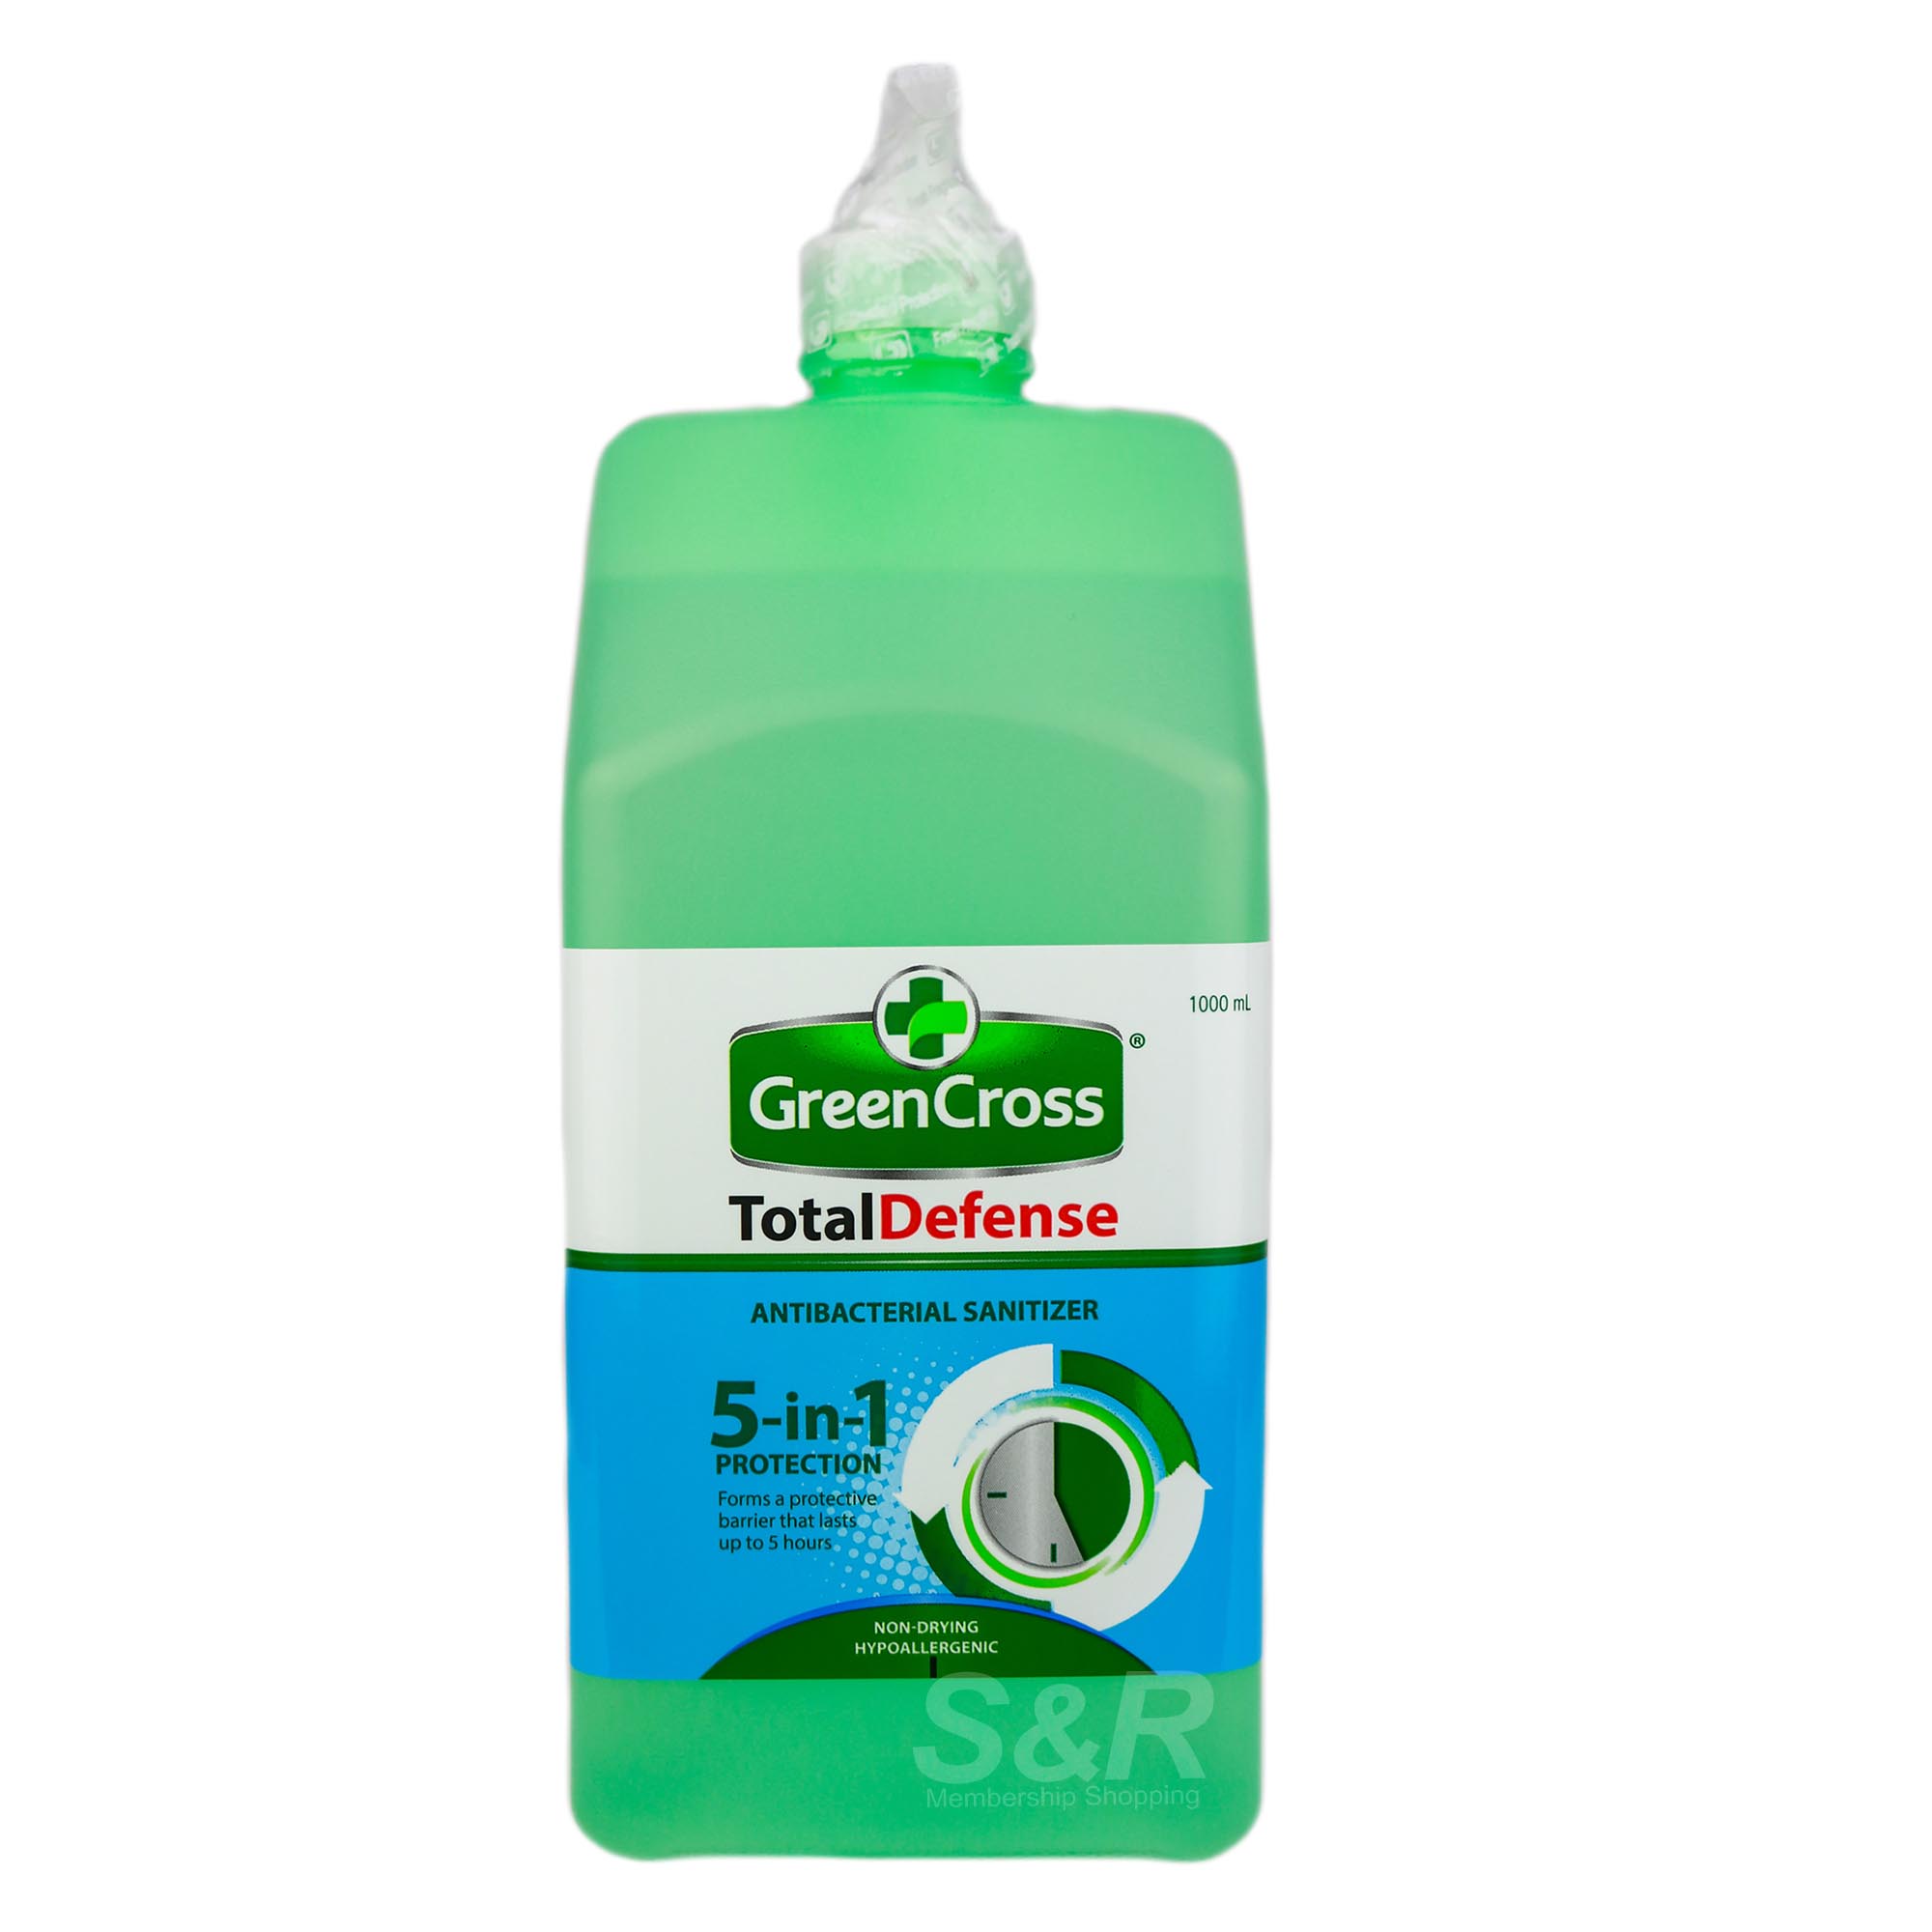 Greencross Total Defense Anti-bacterial Hand Sanitizer 1L